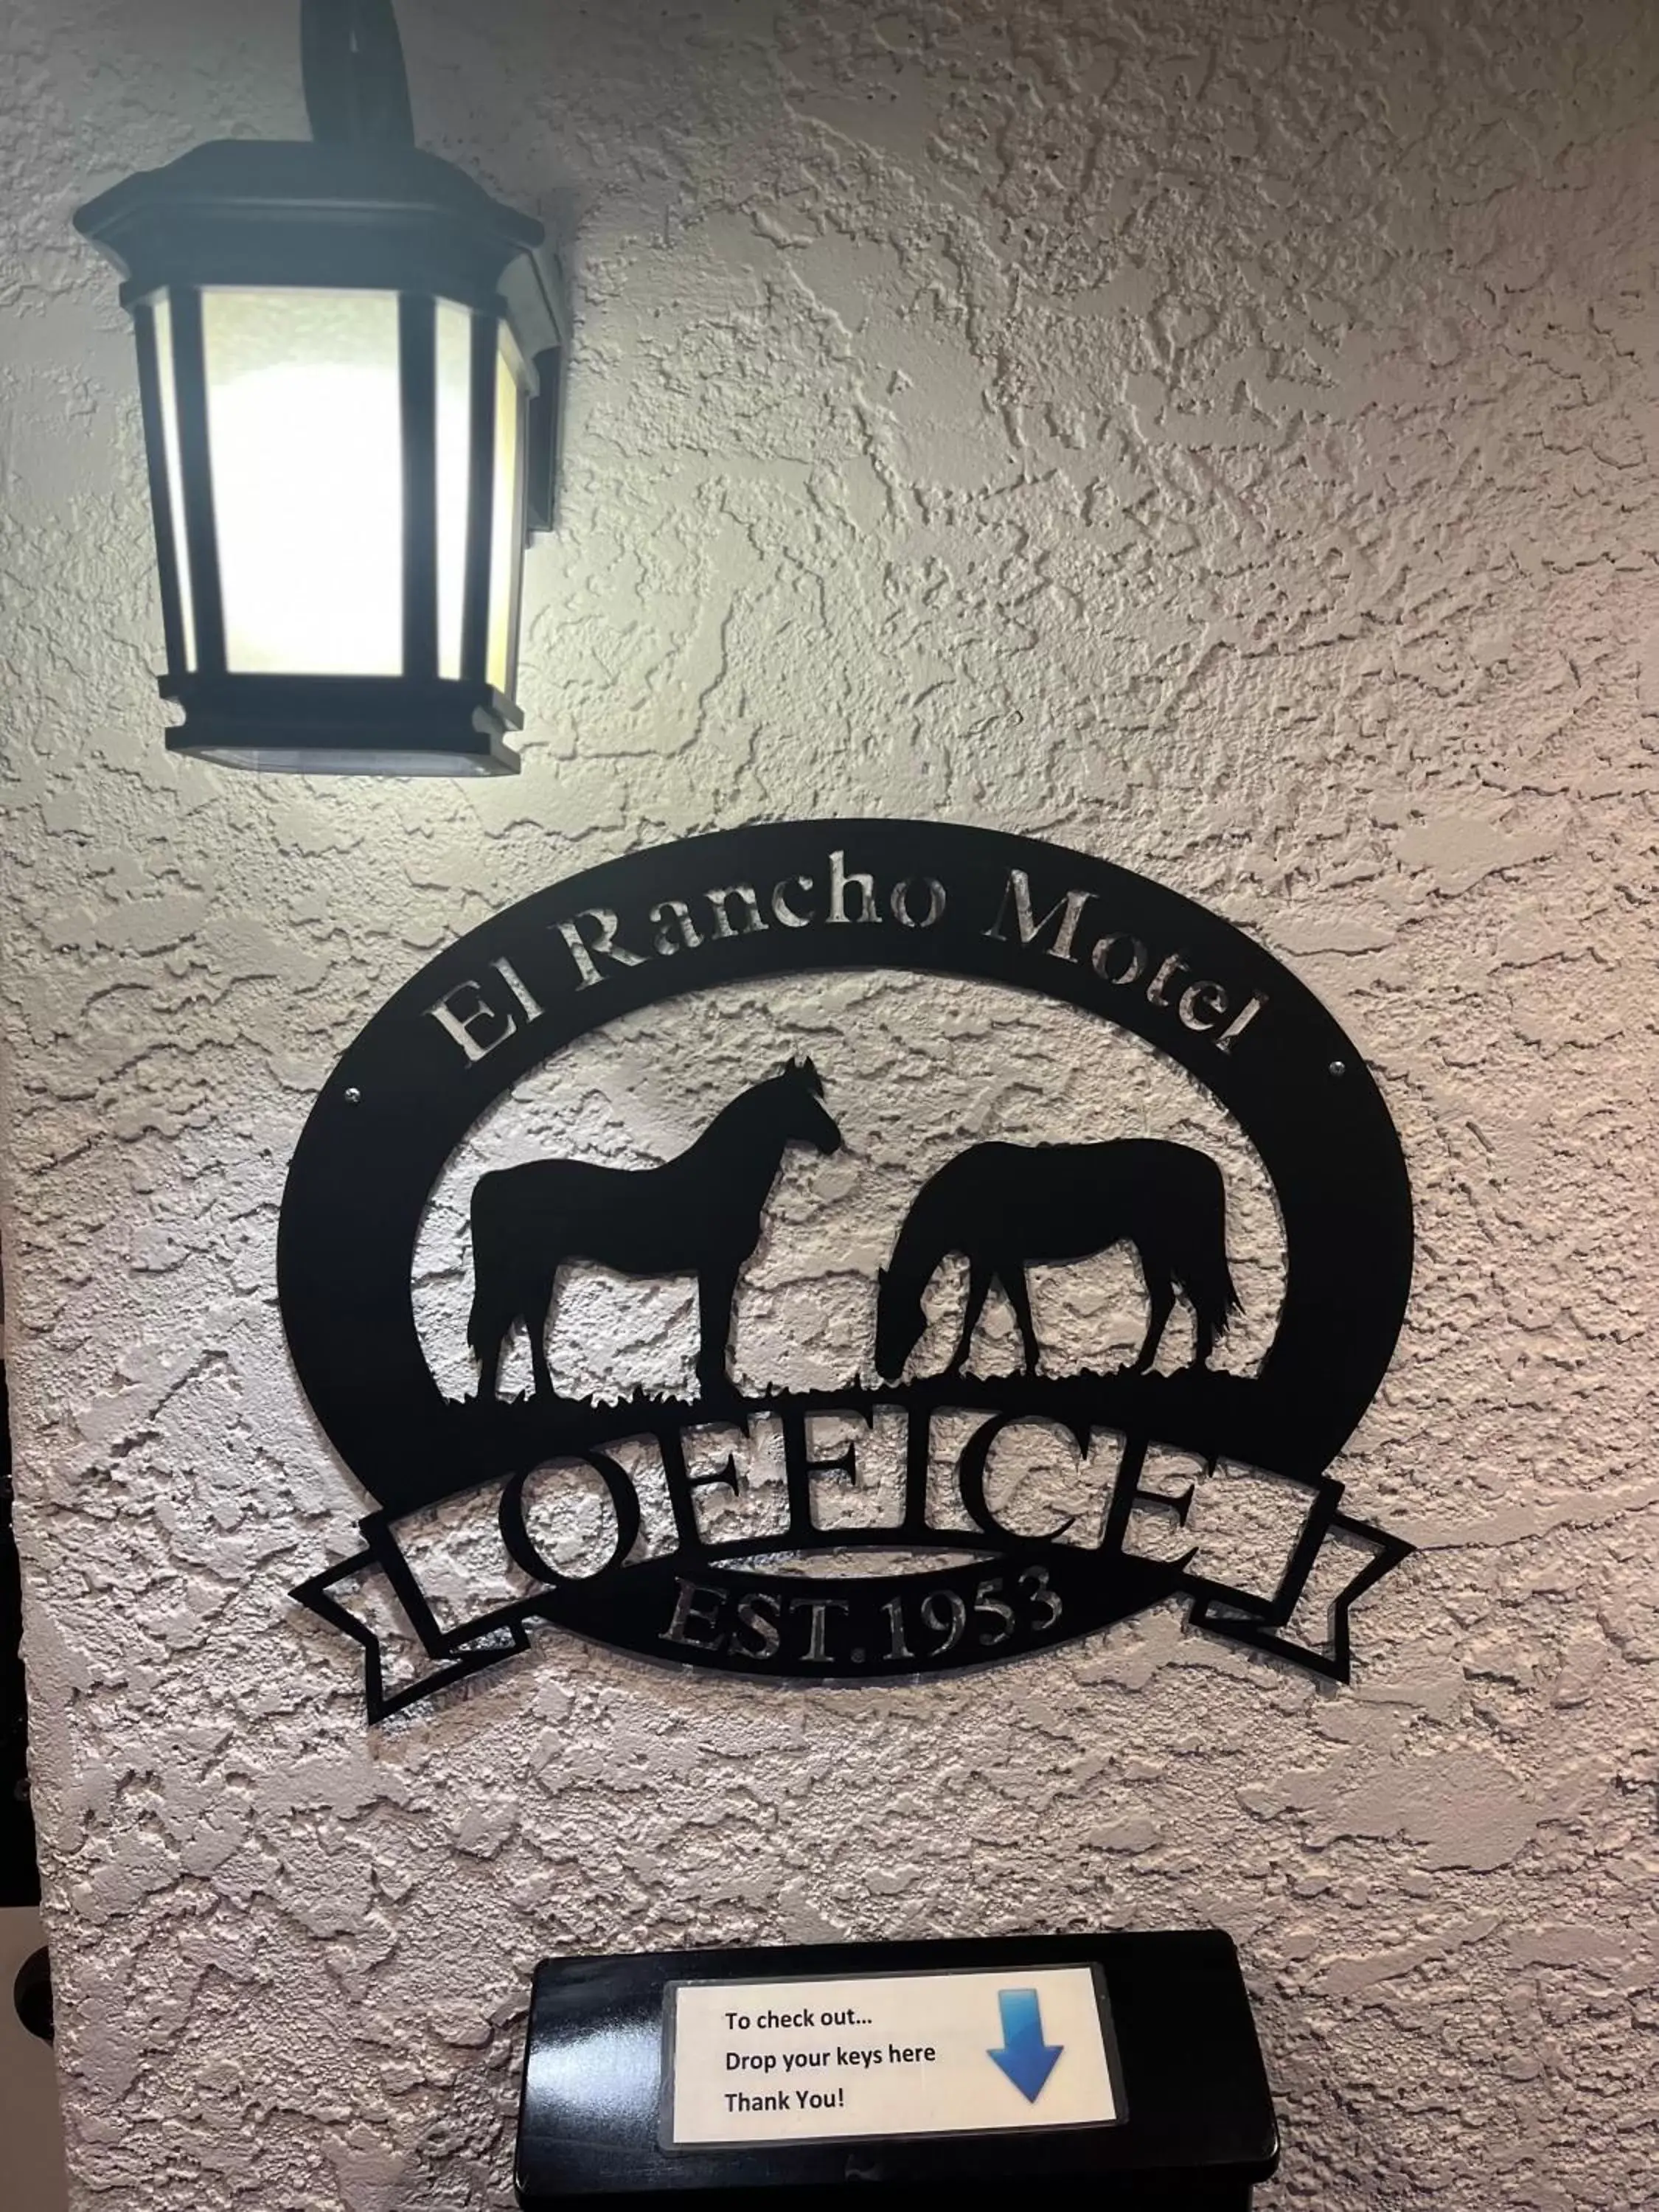 Property logo or sign in El Rancho Motel